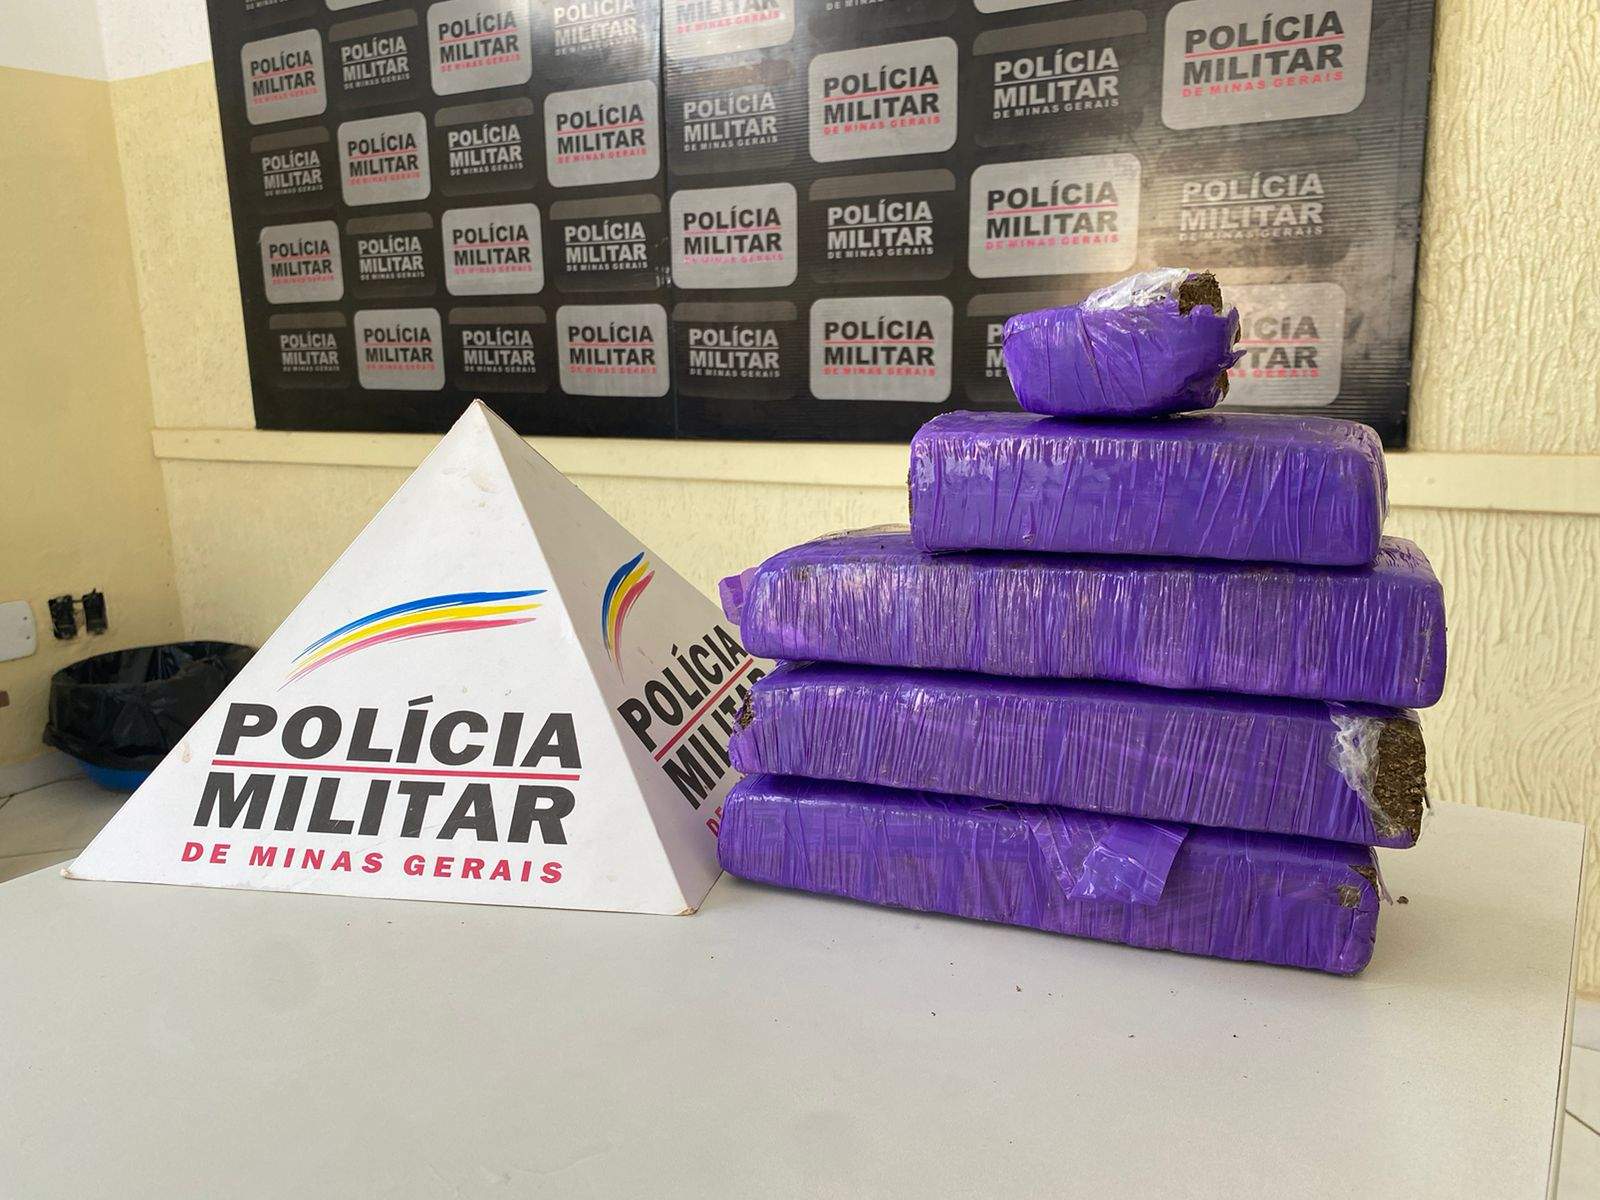 Após denúncia, PM apreende boa quantidade de drogas no Santa Rita, em Manhumirim